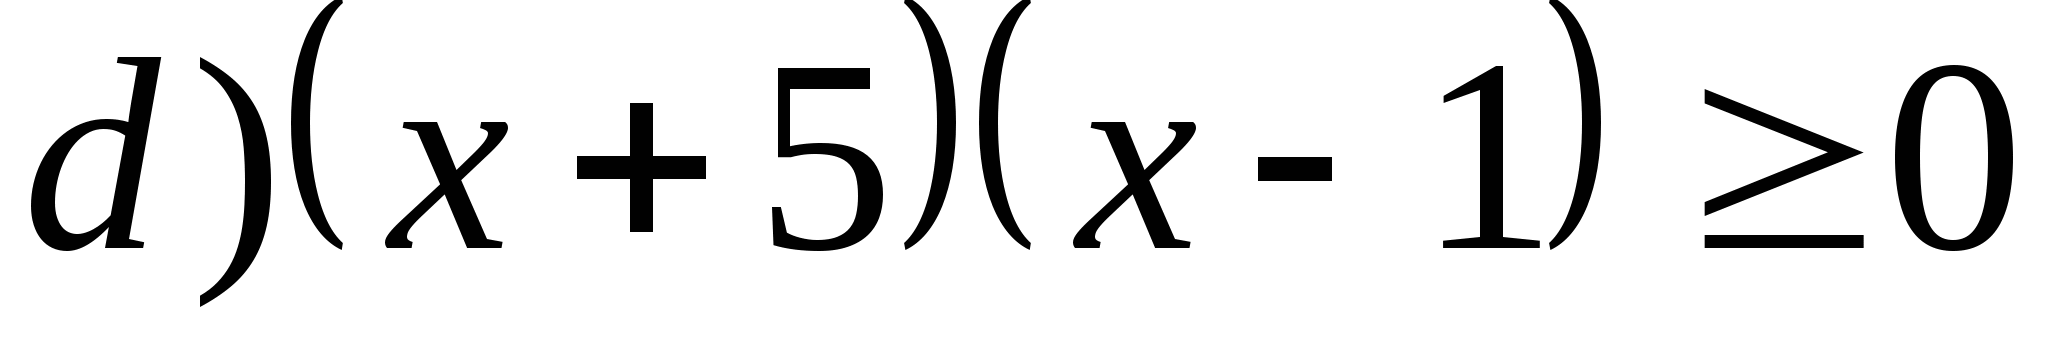 Конспект урока по алгебре 9 по теме: Метод интервалов. Правило ромашки 9 класс.